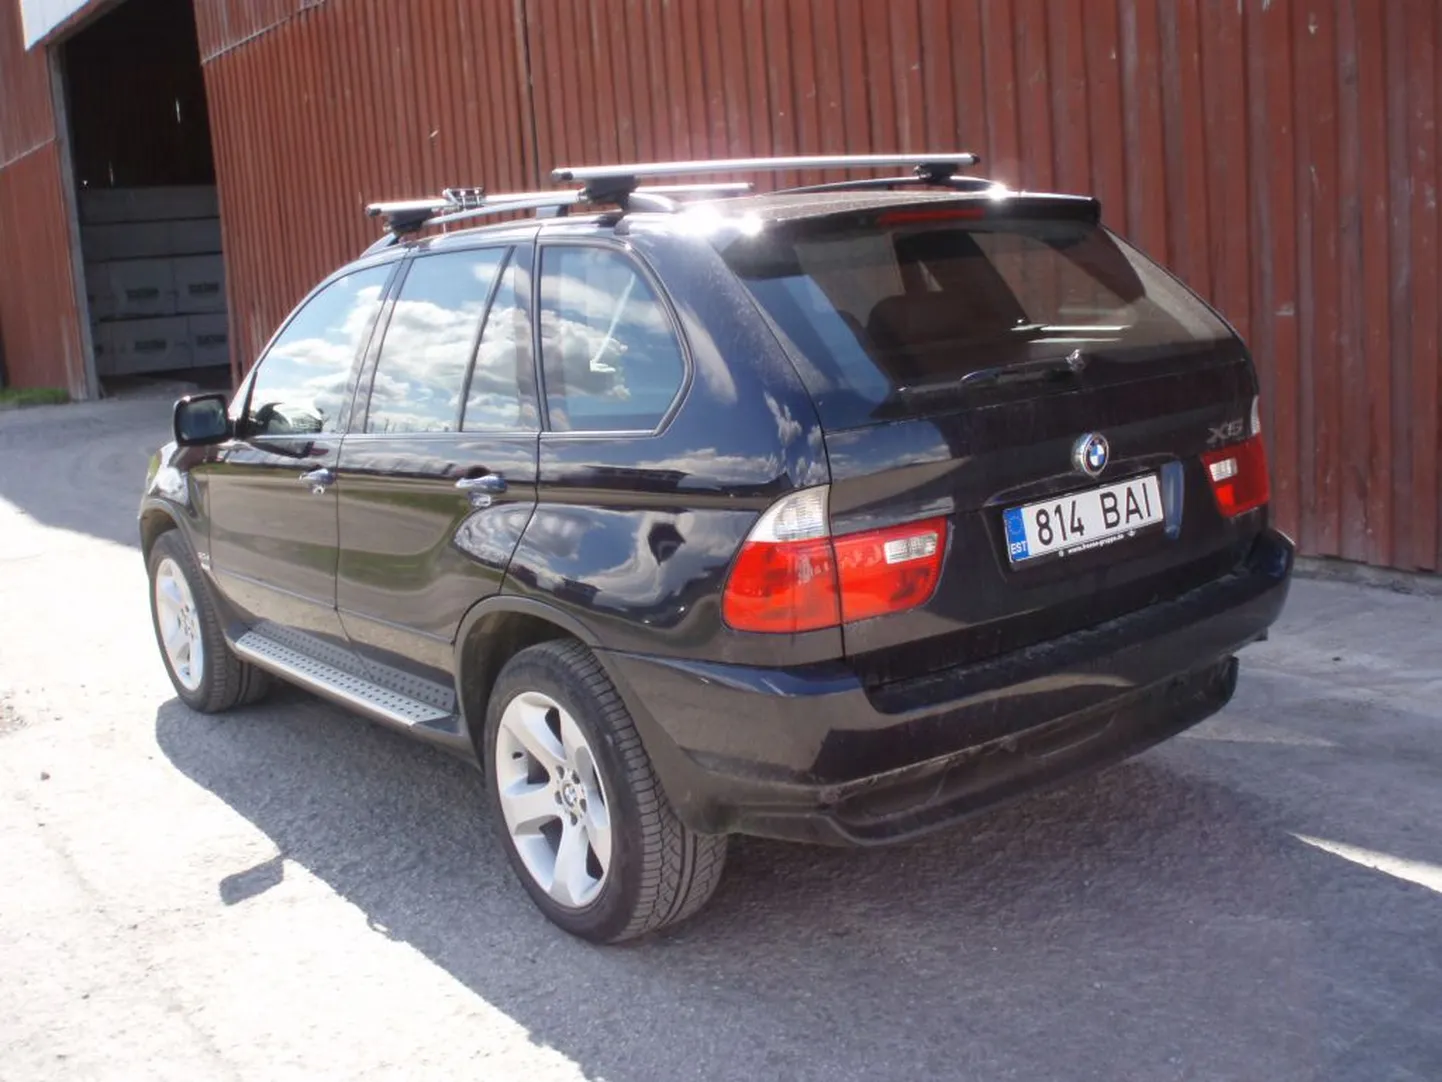 Möödunud reedest saati on kadunud Põlvast ärandatud BMW X5 registrinumbriga 814 BAI.